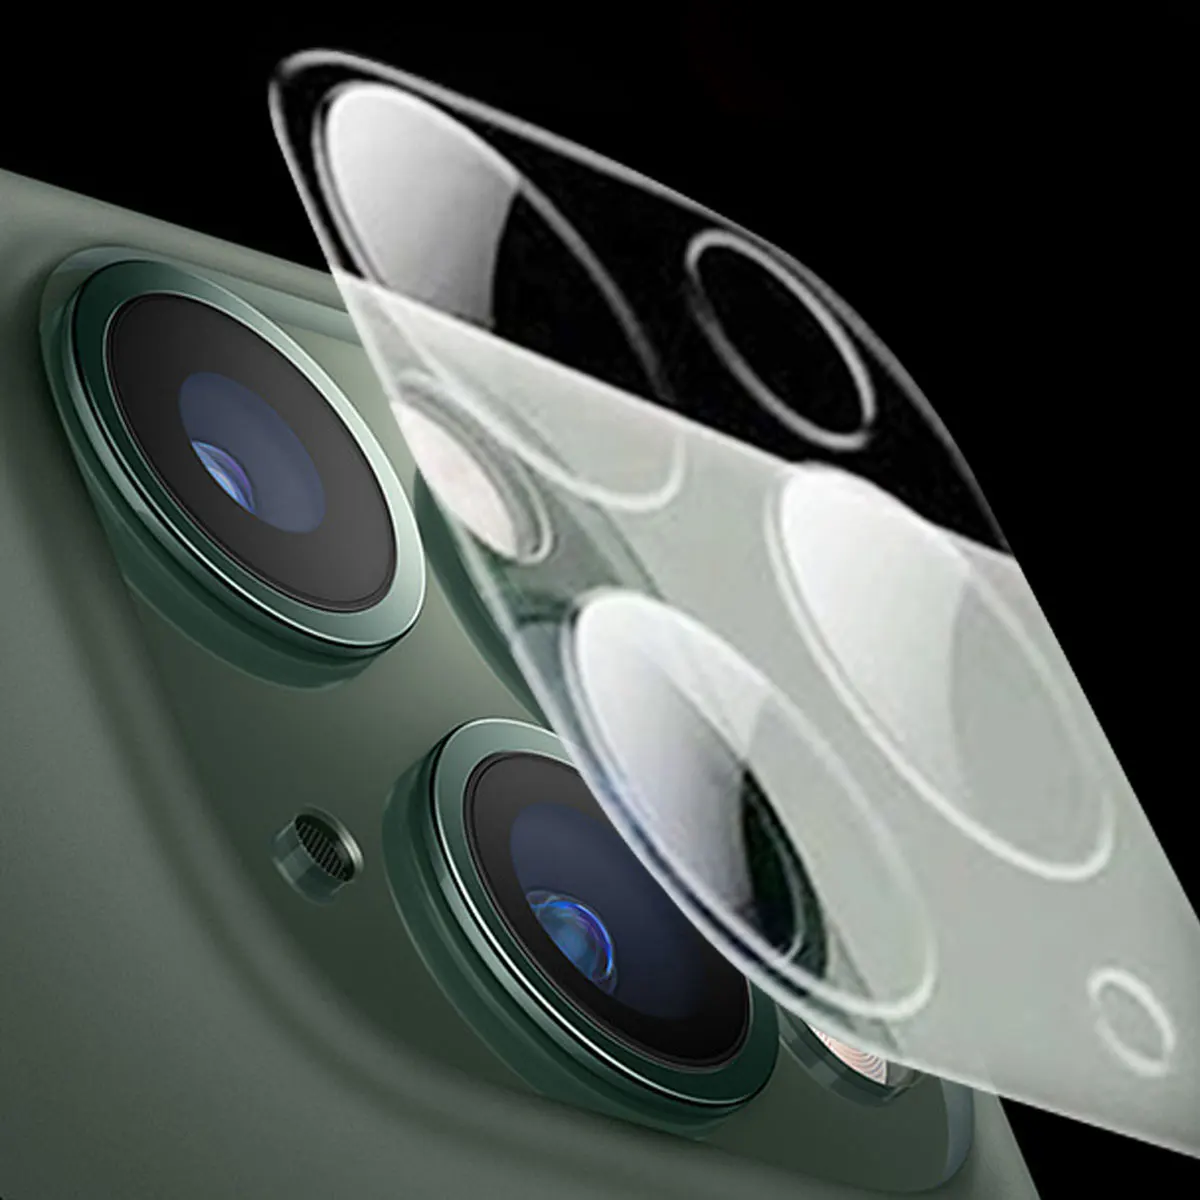 HD объектив камеры протектор экрана для iPhone 11 Pro Max закаленное стекло объектив камеры экран защитная пленка защита от царапин